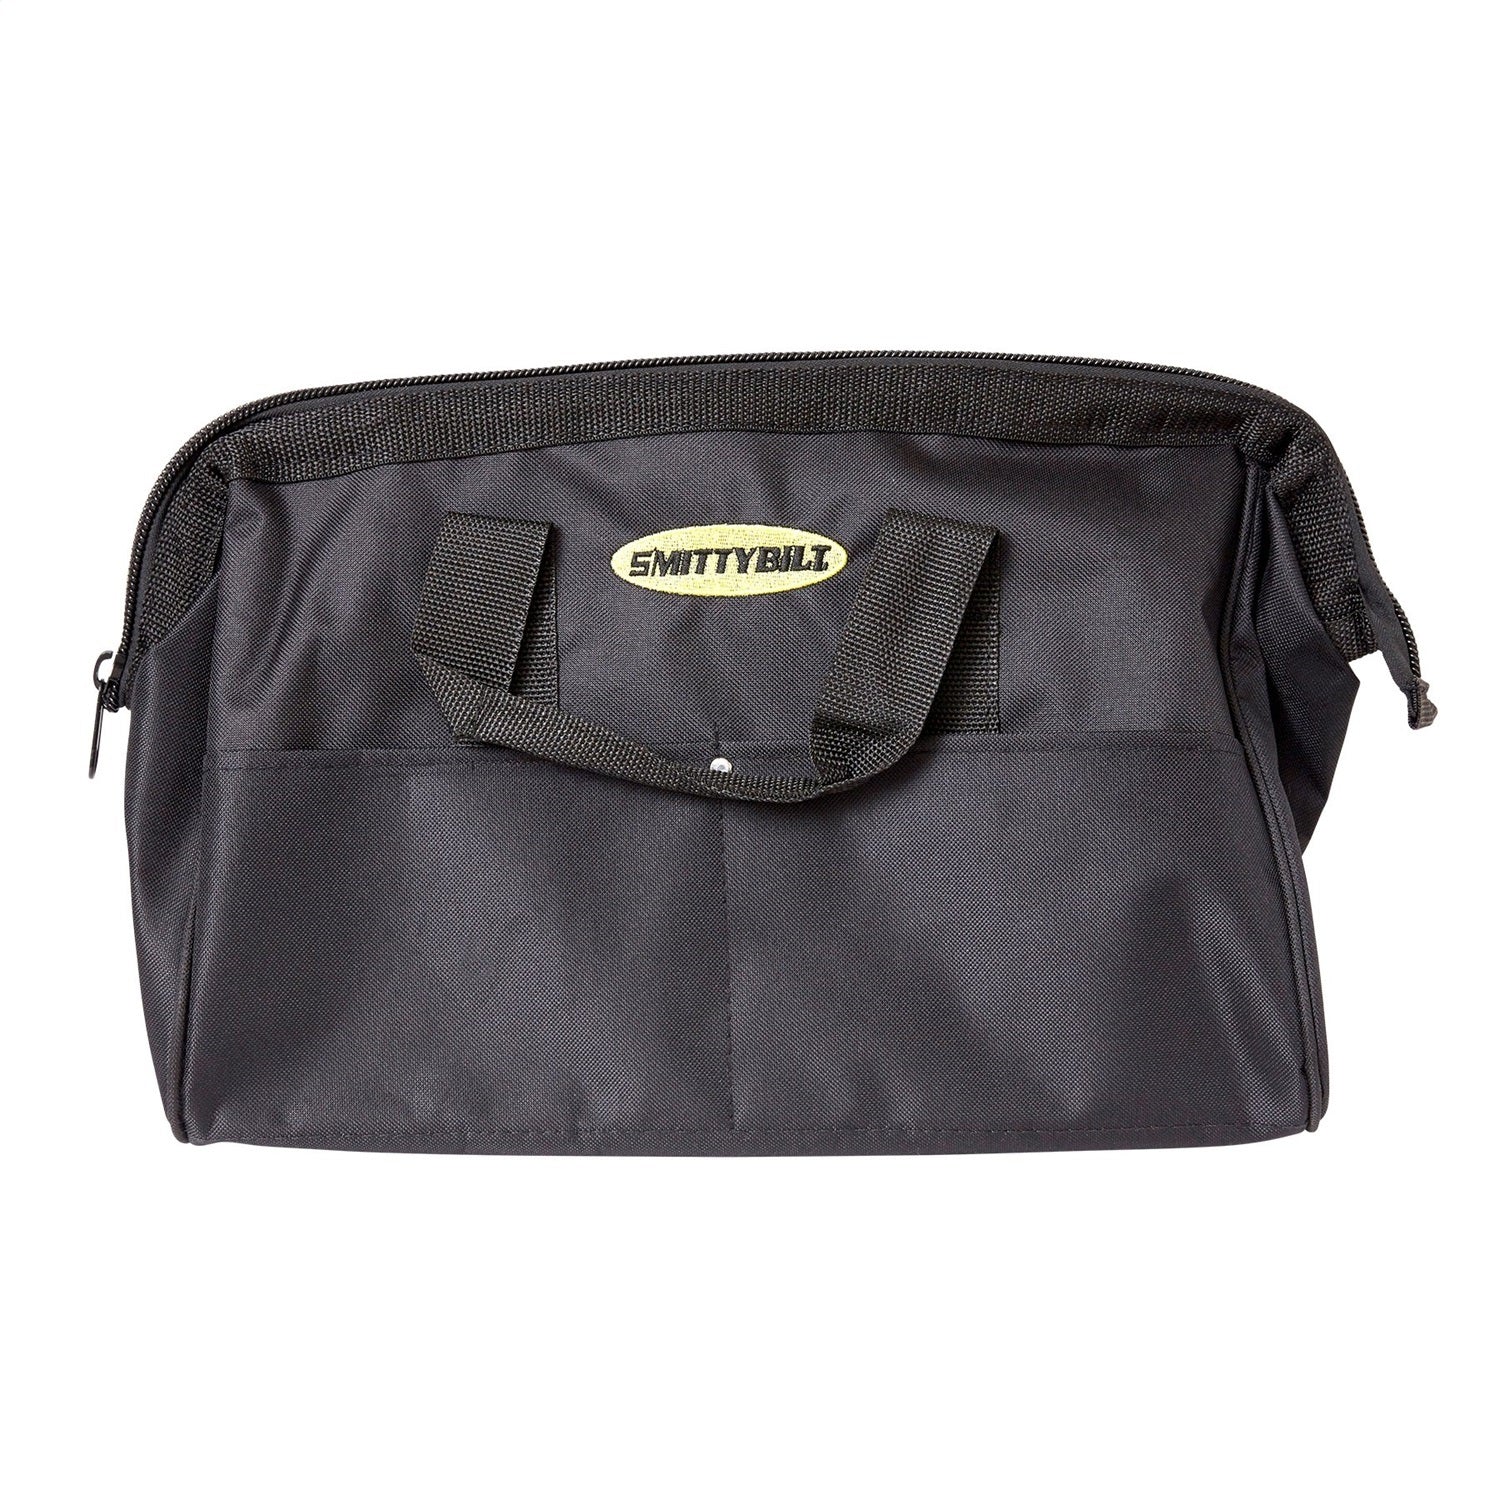 Smittybilt 2726-01 Trail Gear Bag